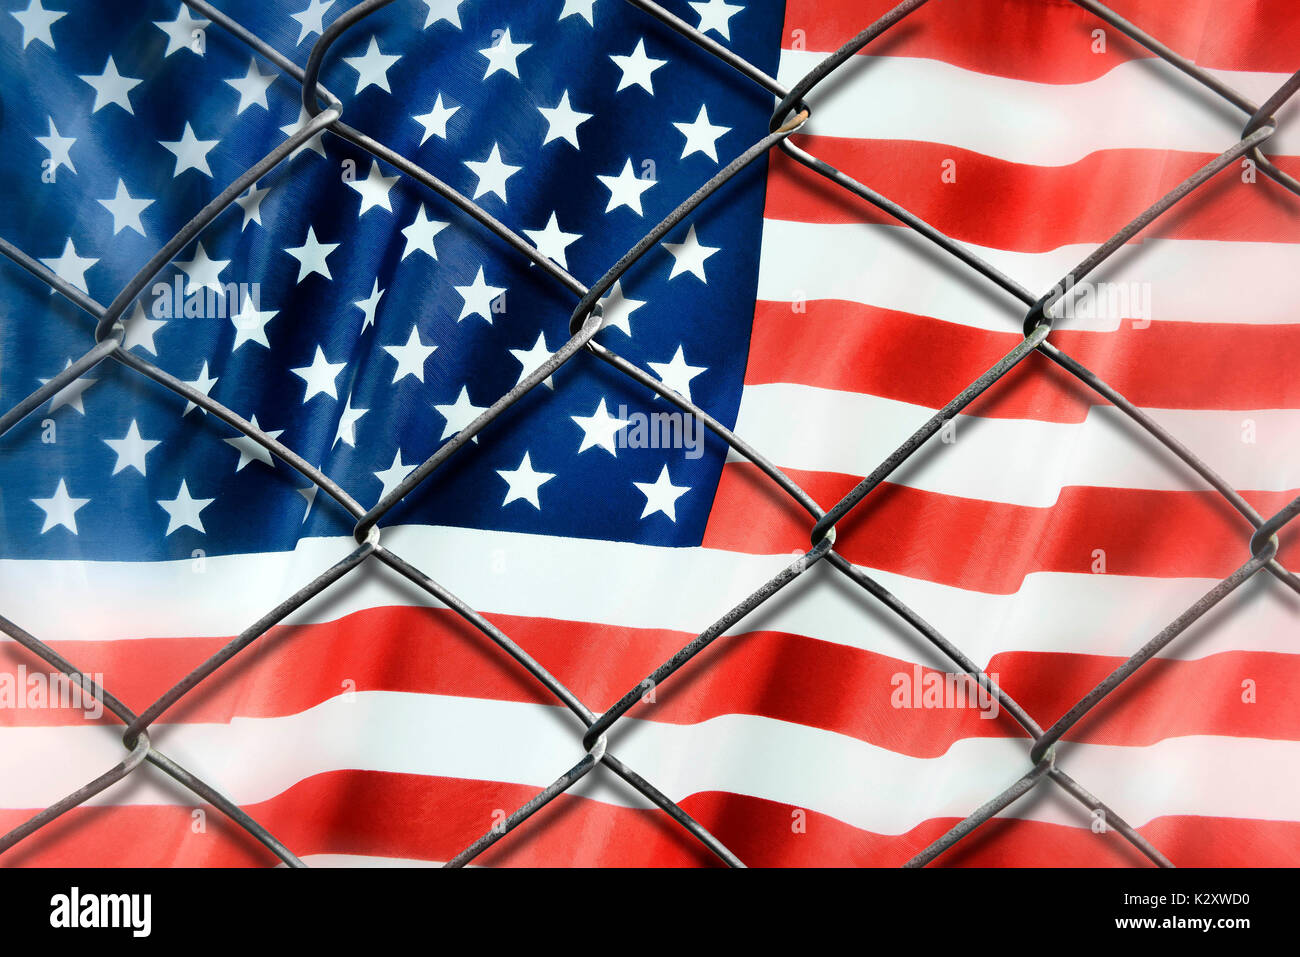 Flagge der USA hinter einem Zaun, symbolische Foto Protektionismus, die Fahne der USA hinter einem Drahtzaun, Symbolfoto Protektionismus Stockfoto